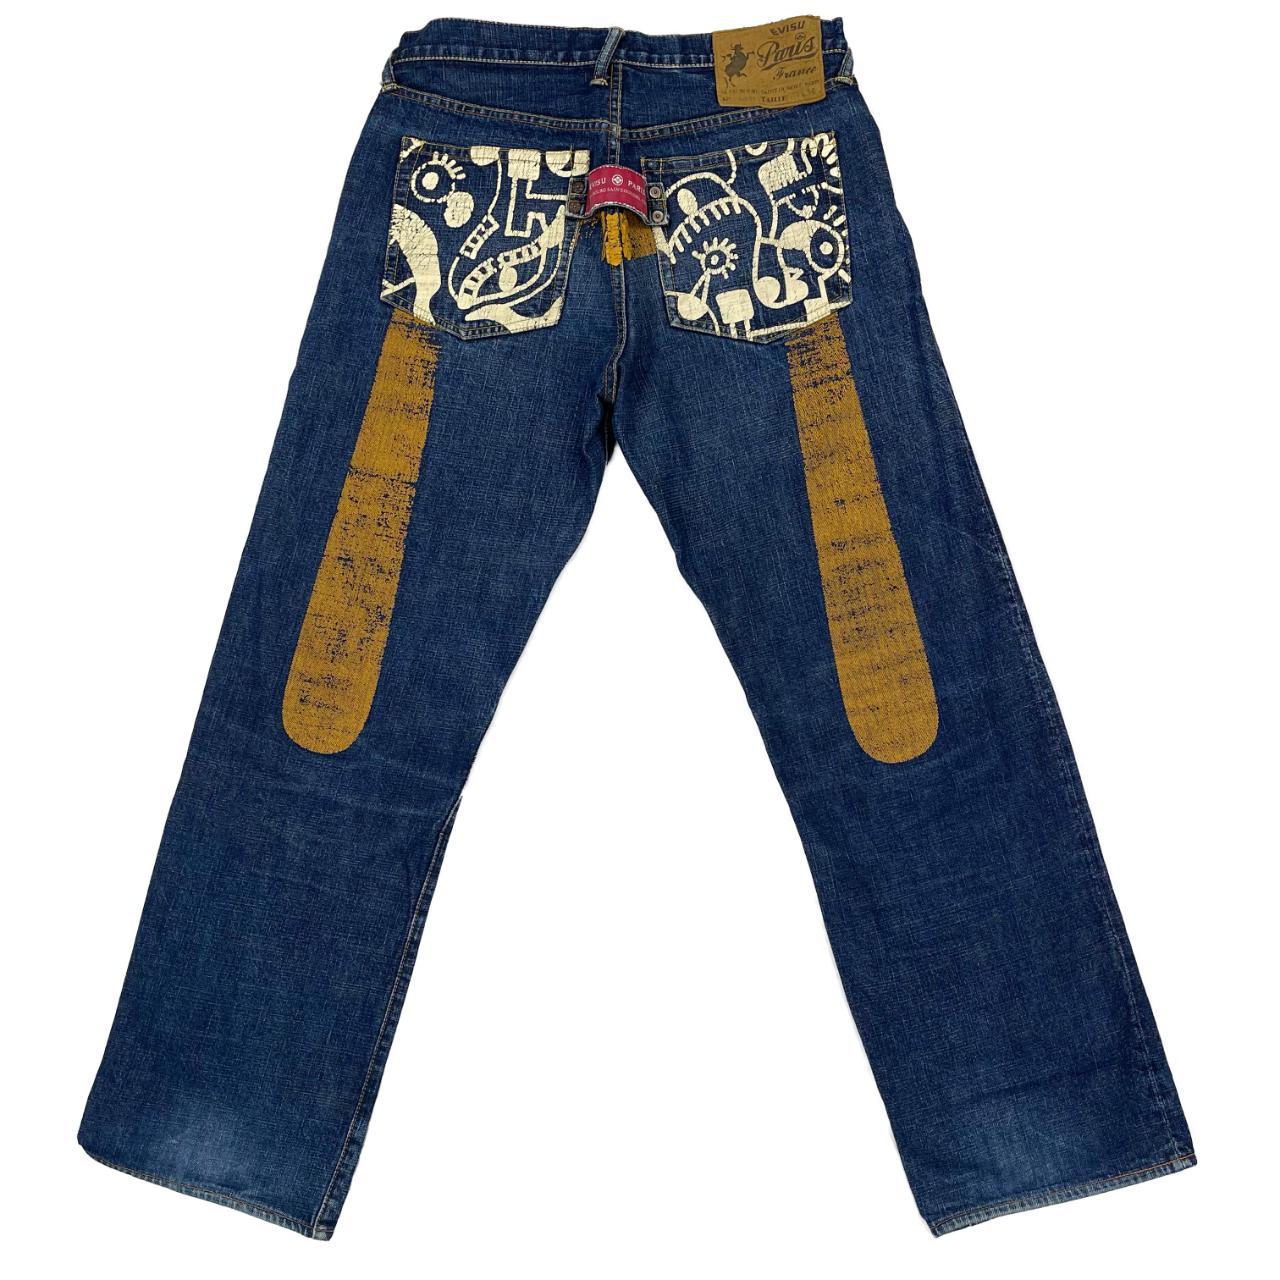 Evisu Picasso Jeans Good condition Size: 34W, 32L - Depop